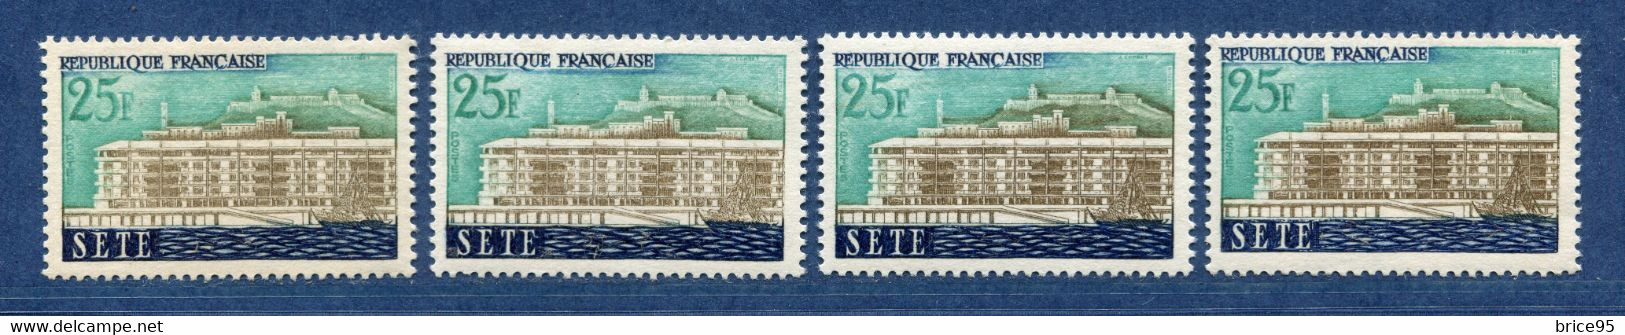 ⭐ France - Variété - YT N° 1155 - Couleurs - Pétouille - Neuf Sans Charnière - 1958 ⭐ - Neufs